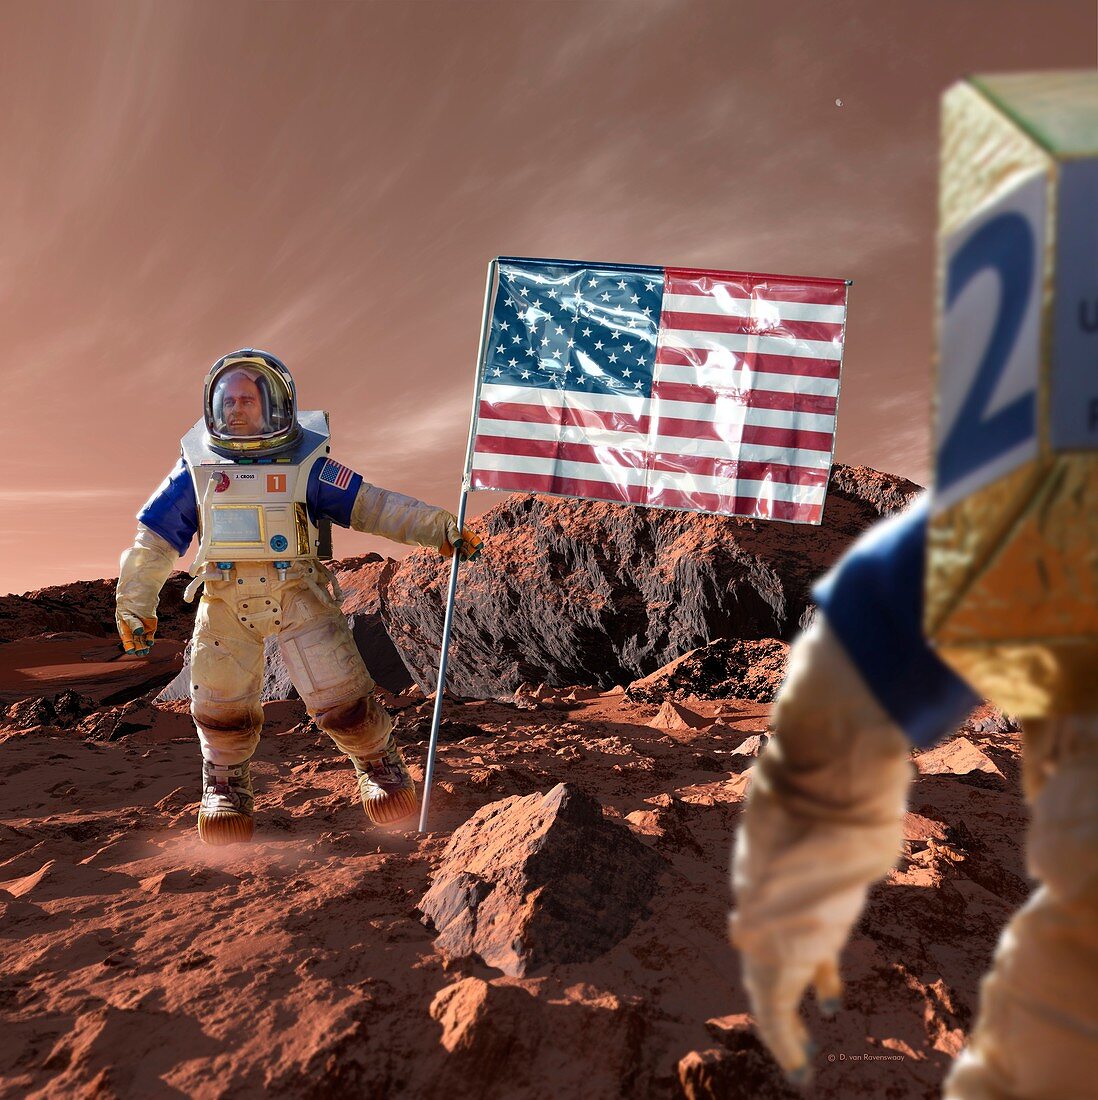 Astronaut on Mars with US flag, illustration